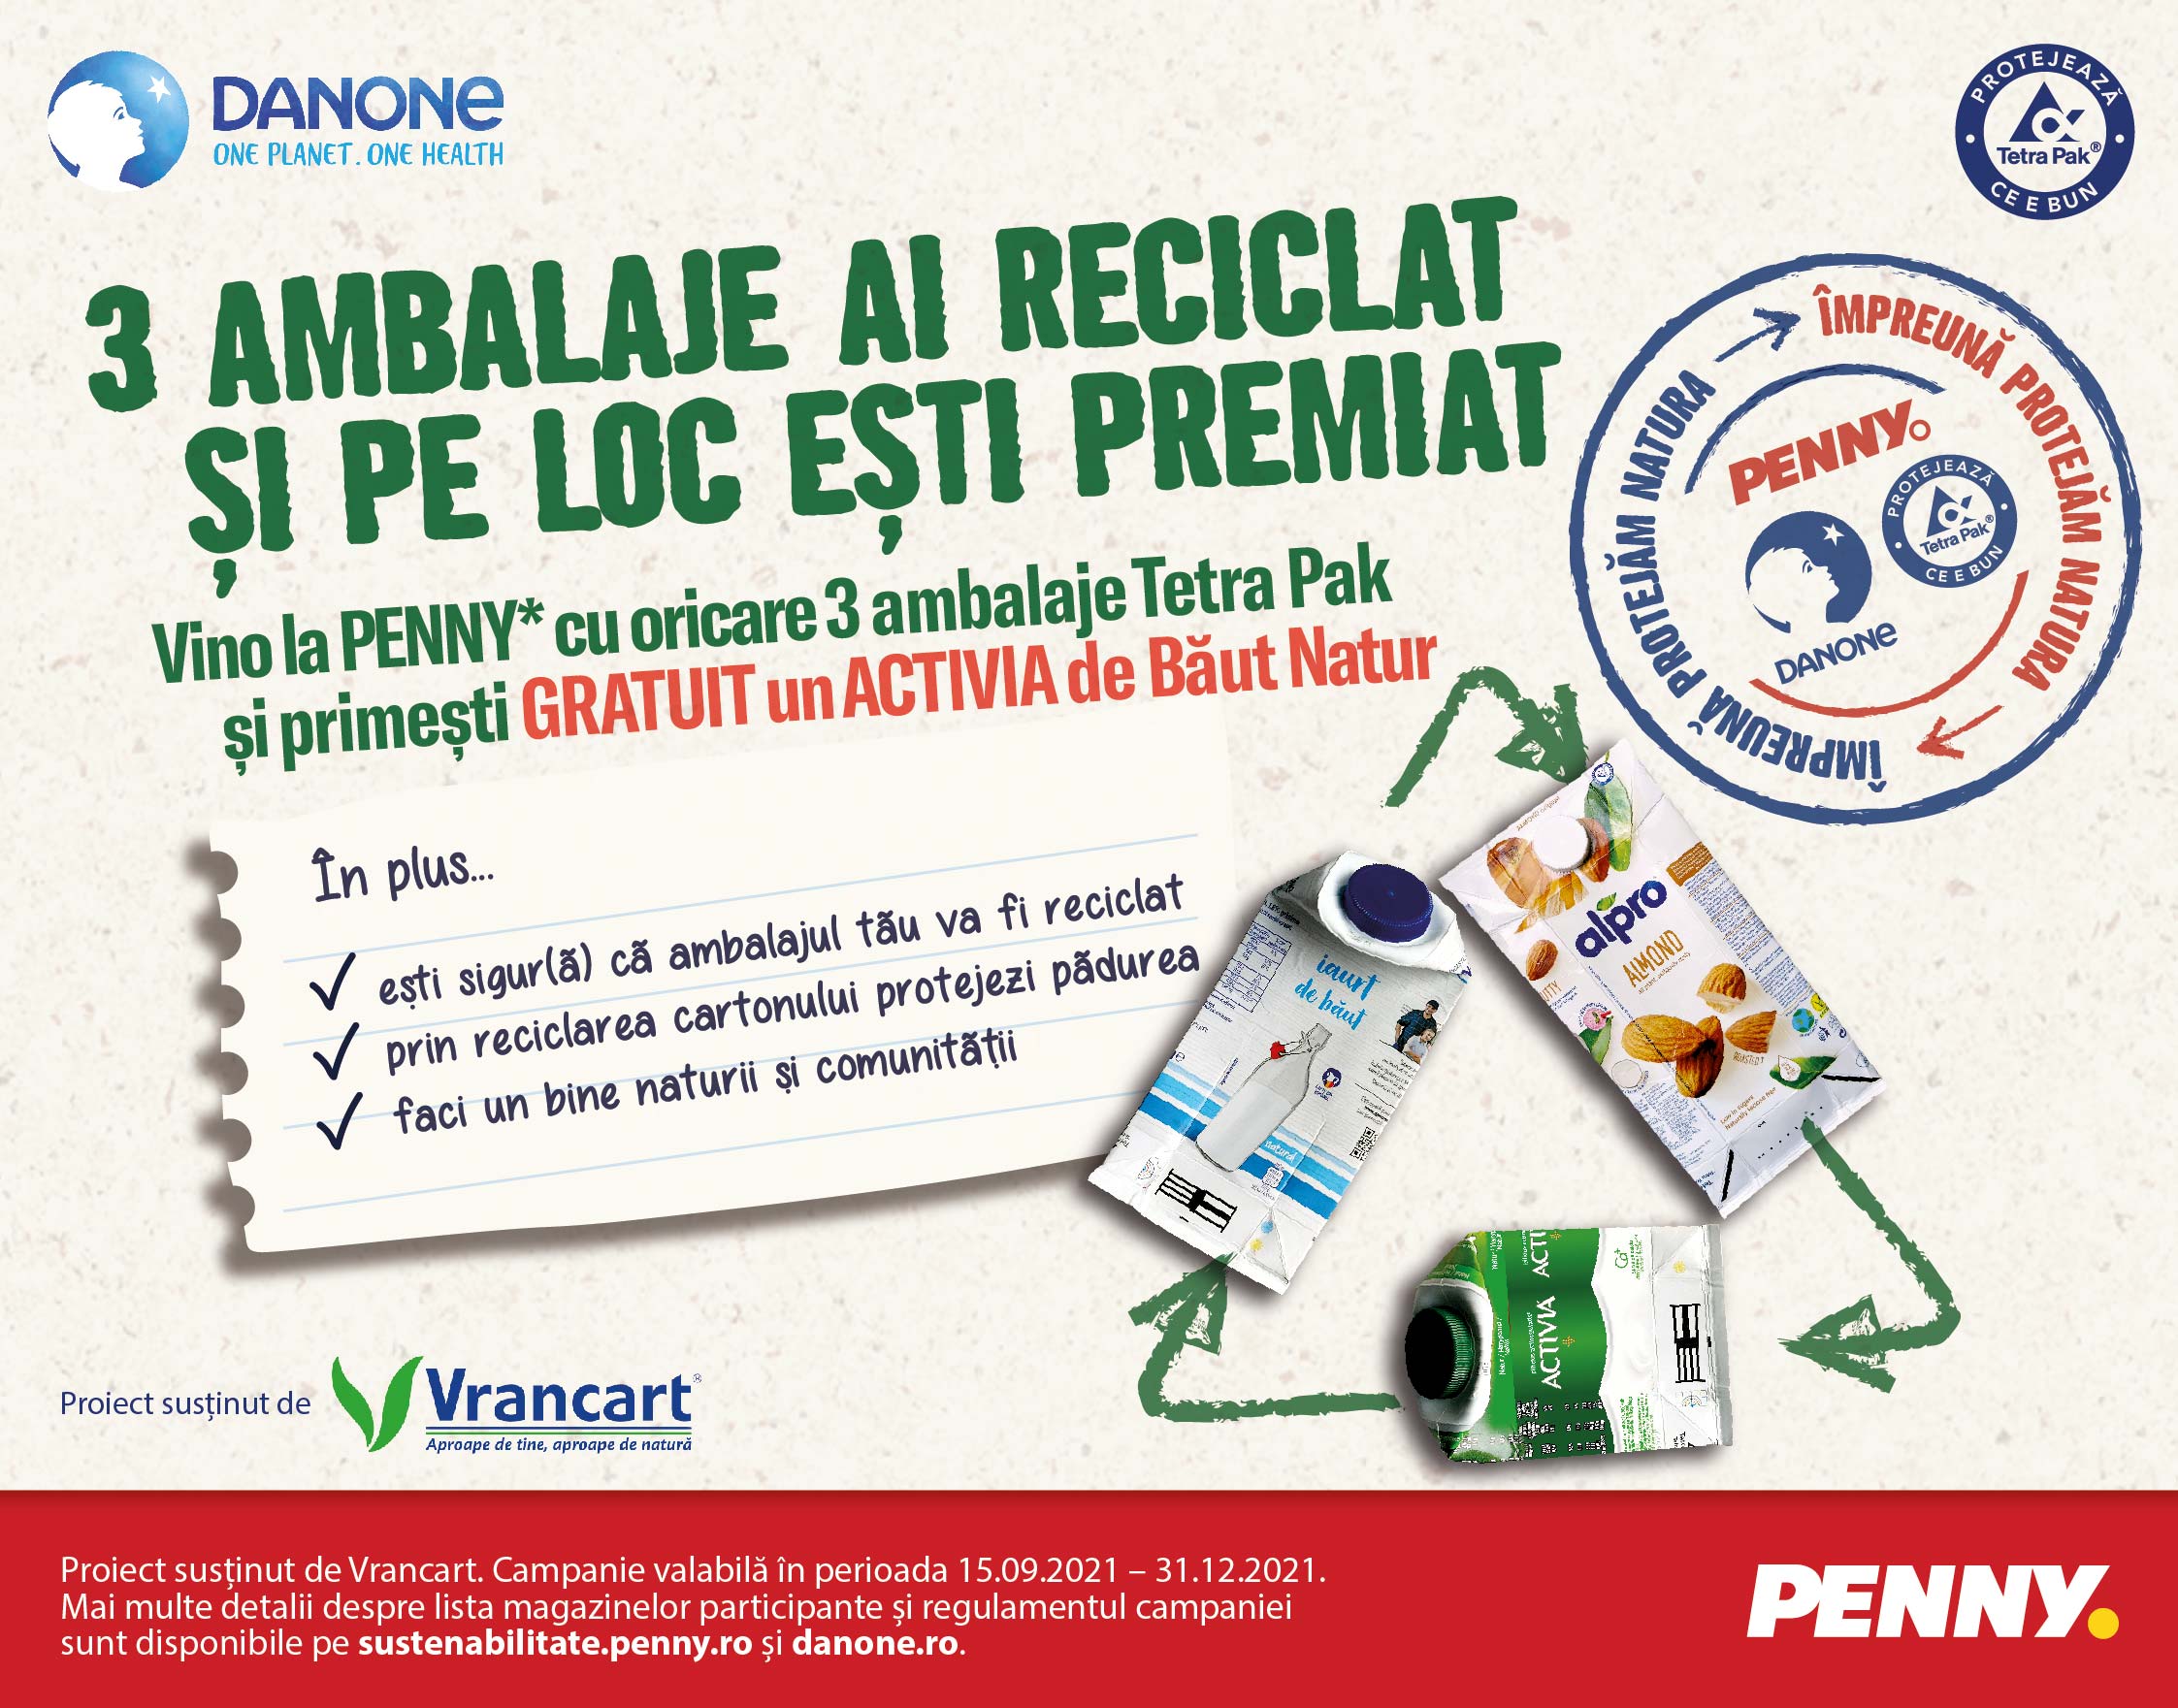 Danone România și PENNY invită consumatorii să colecteze ambalaje TetraPak în 30 de magazine ale retailerului din București și Ilfov